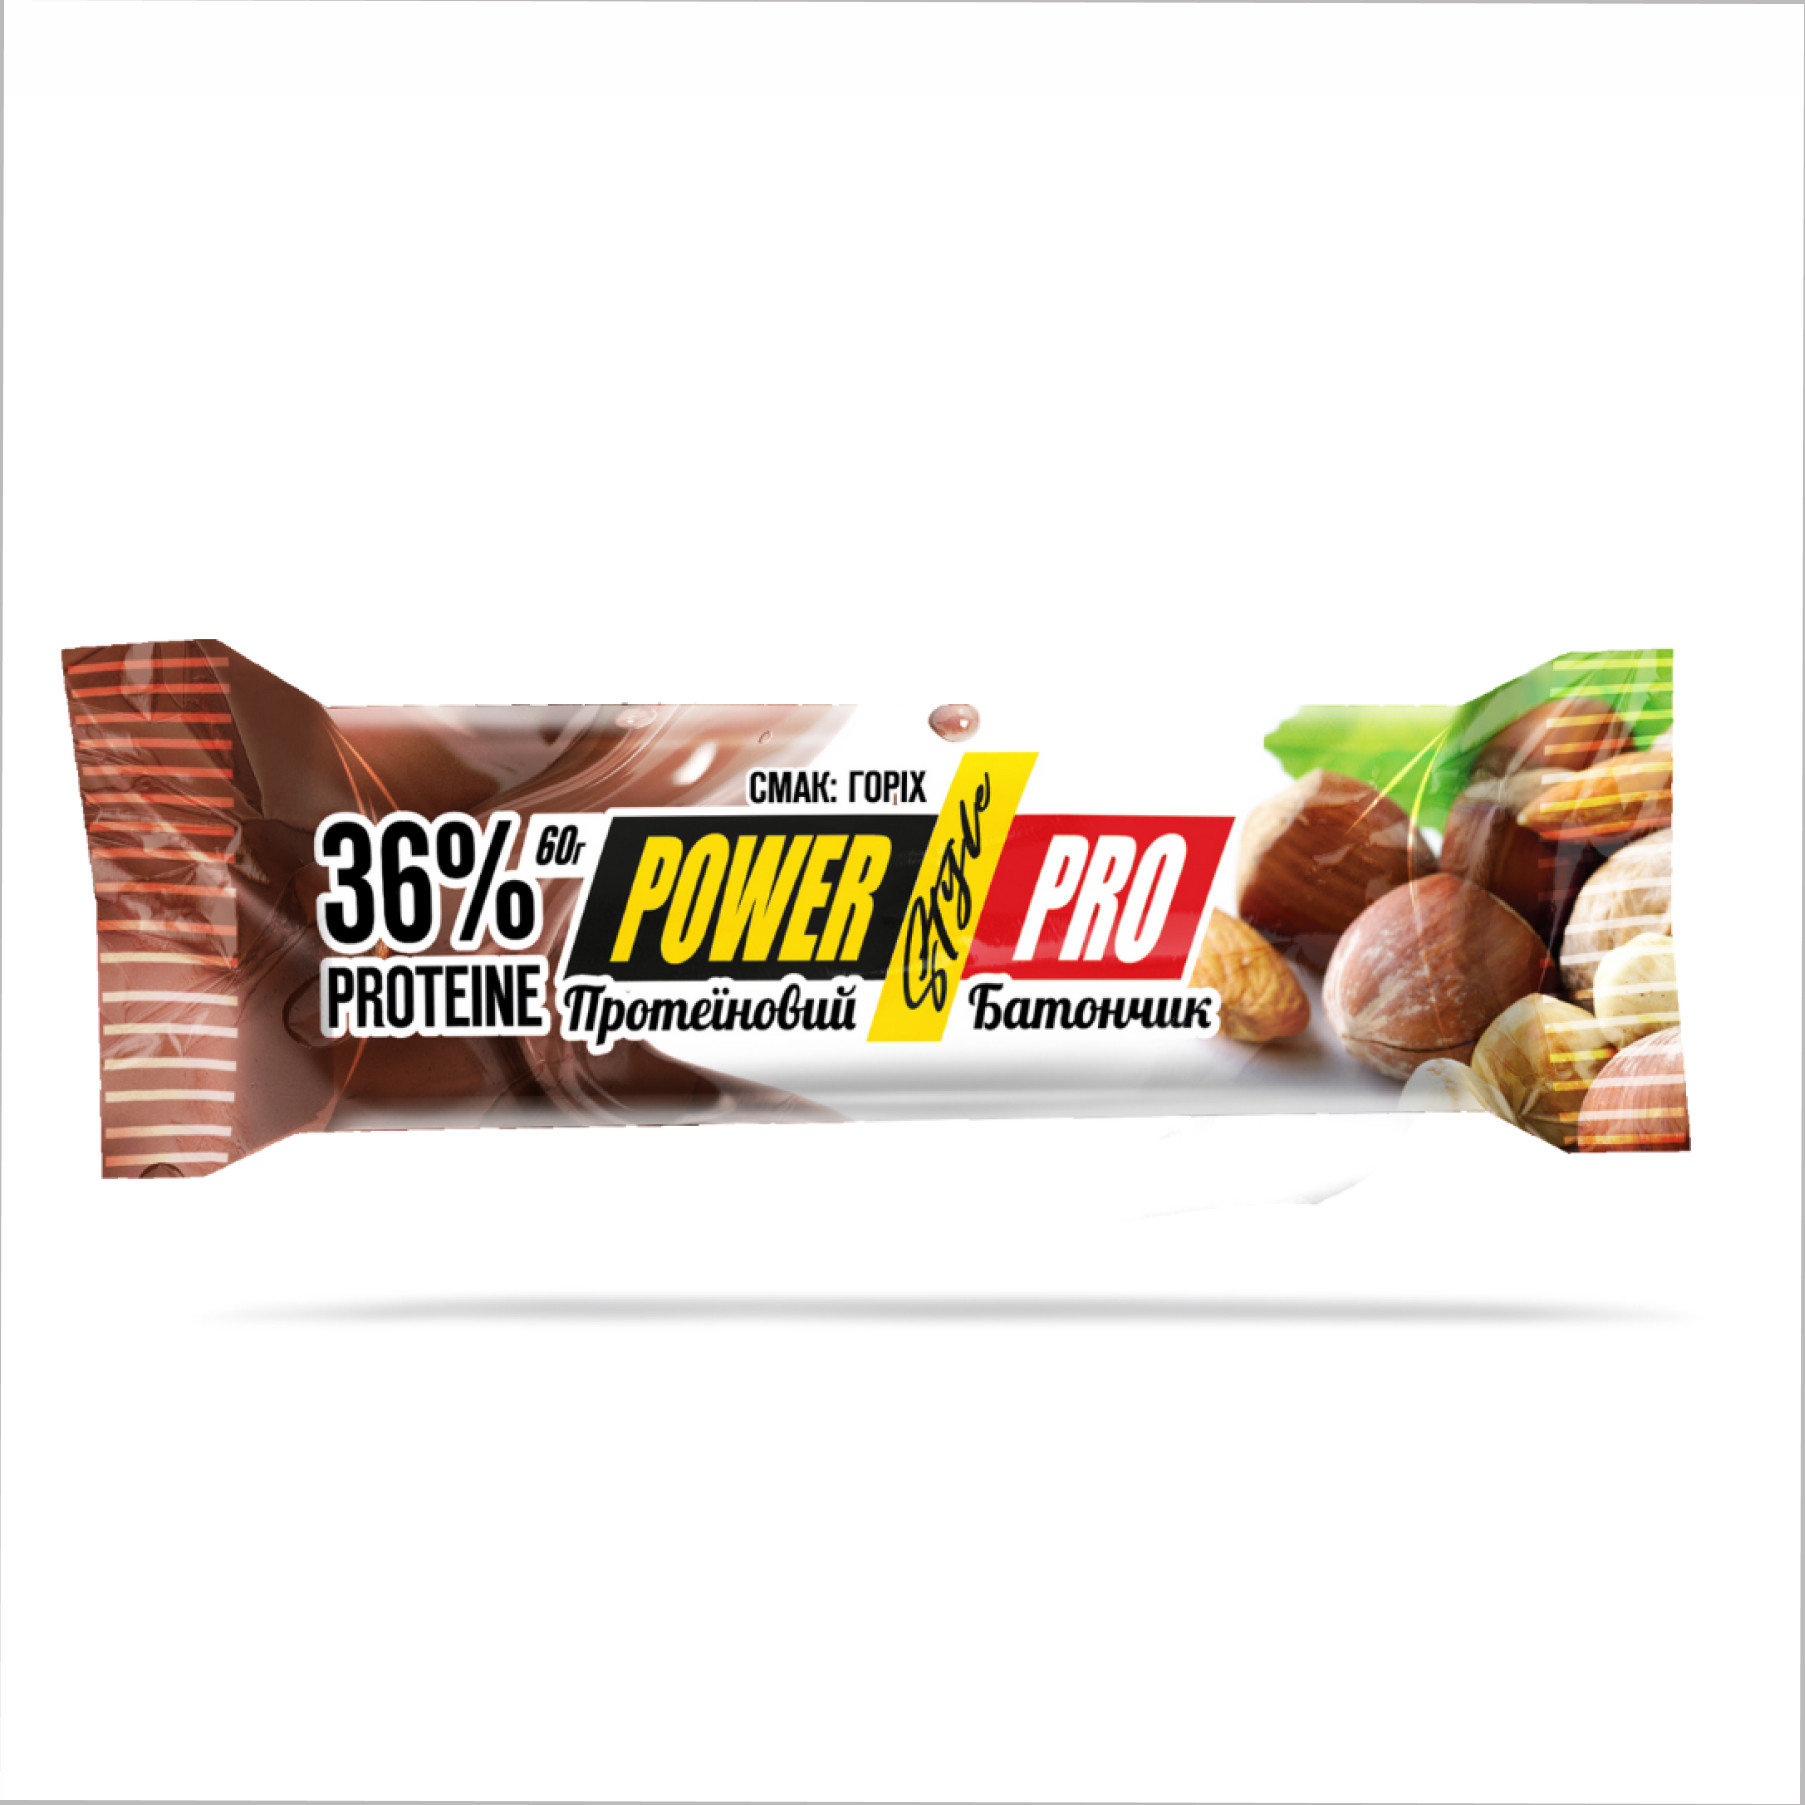 Таблетки Protein Bar Nutella 36% - 20x60g Nut 100-46-0594470-20